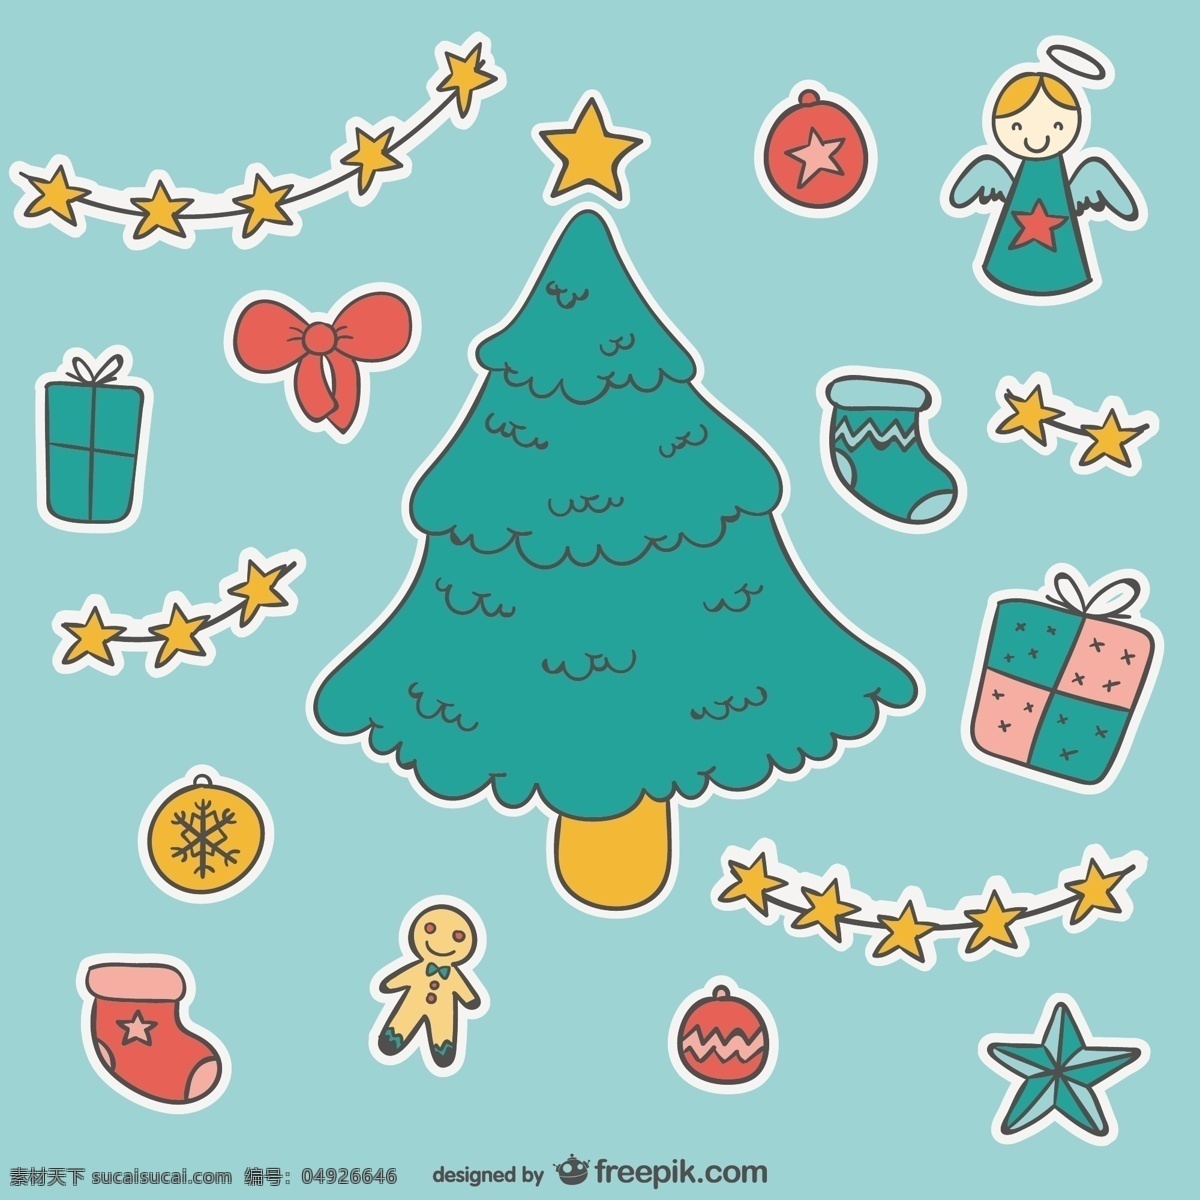 圣诞卡通贴纸 圣诞树 装饰 卡通 球 贴纸 圣诞球 圣诞装饰 玩具 装饰品 圣诞装饰品 圣诞玩具 青色 天蓝色